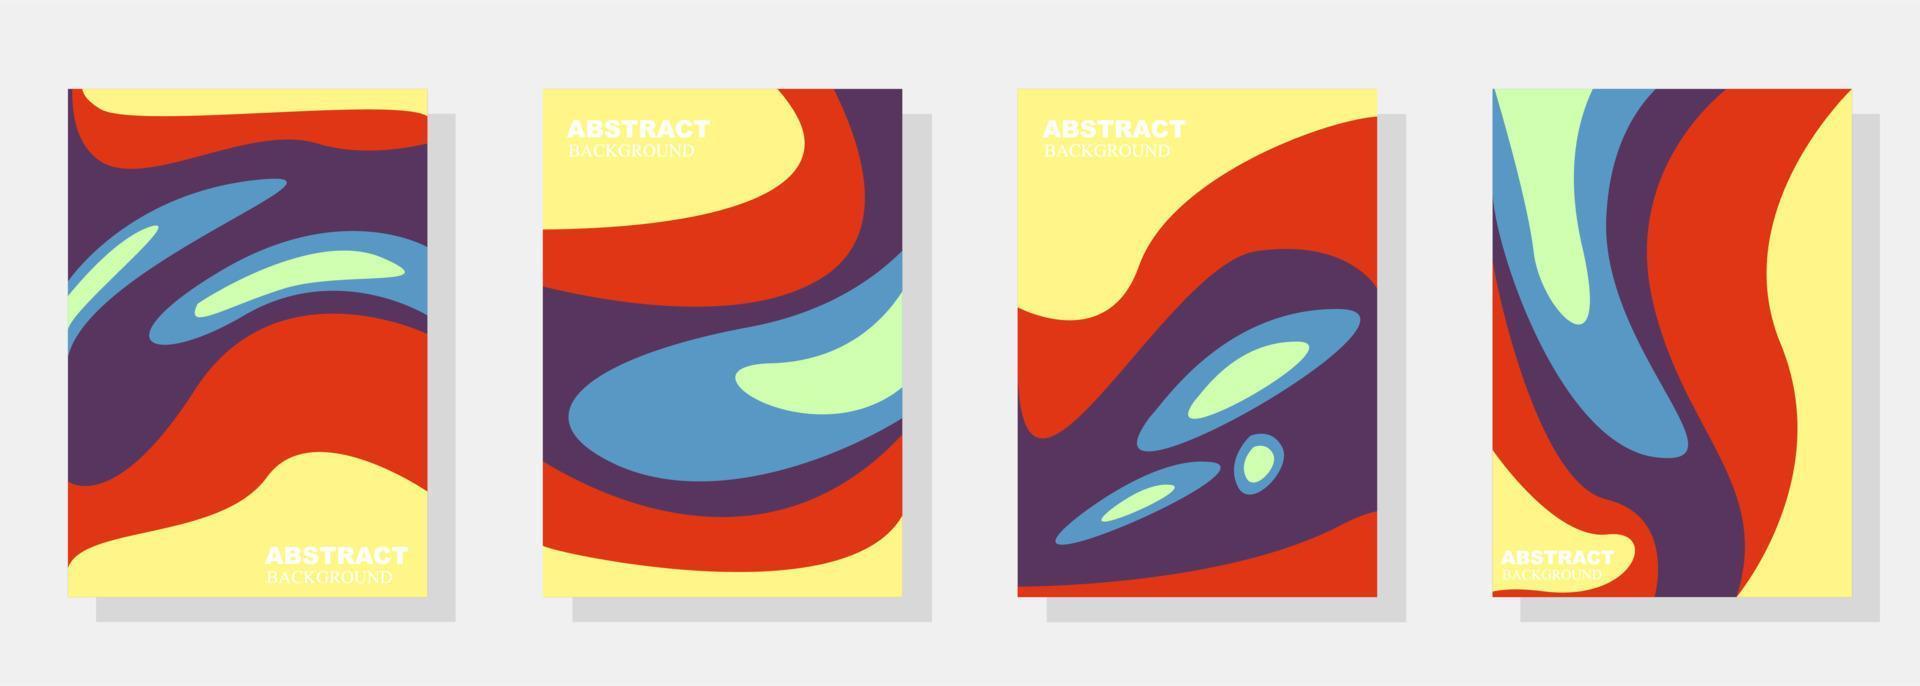 conjunto de fondos de portada abstractos coloridos con formato a4. fondo, patrón, color, resumen, vector, textura, forma, divertido, moderno, diseño, gráfico, geométrico, línea, guay, chapoteo vector